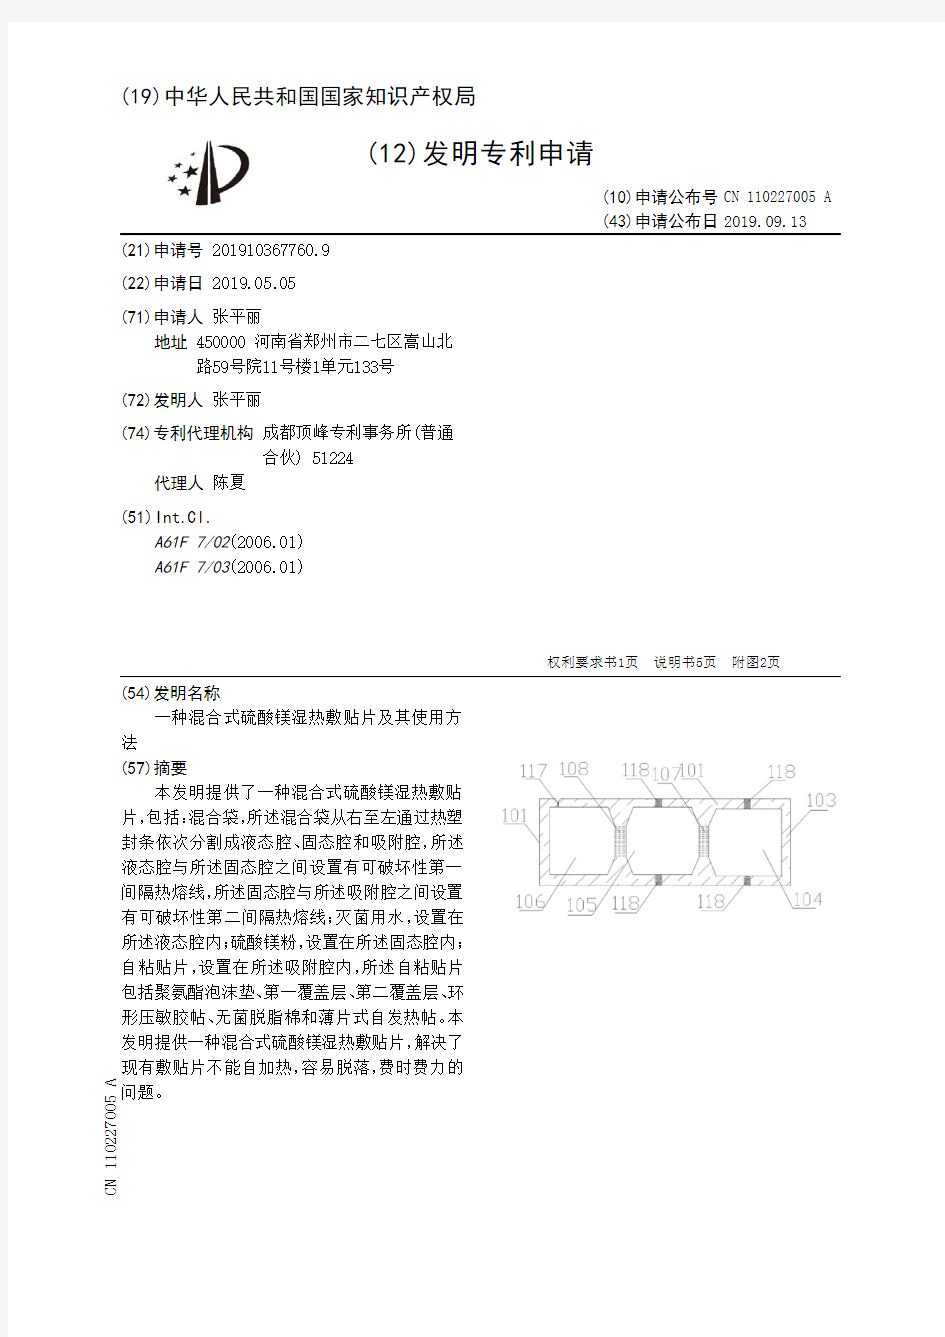 【CN110227005A】一种混合式硫酸镁湿热敷贴片及其使用方法【专利】